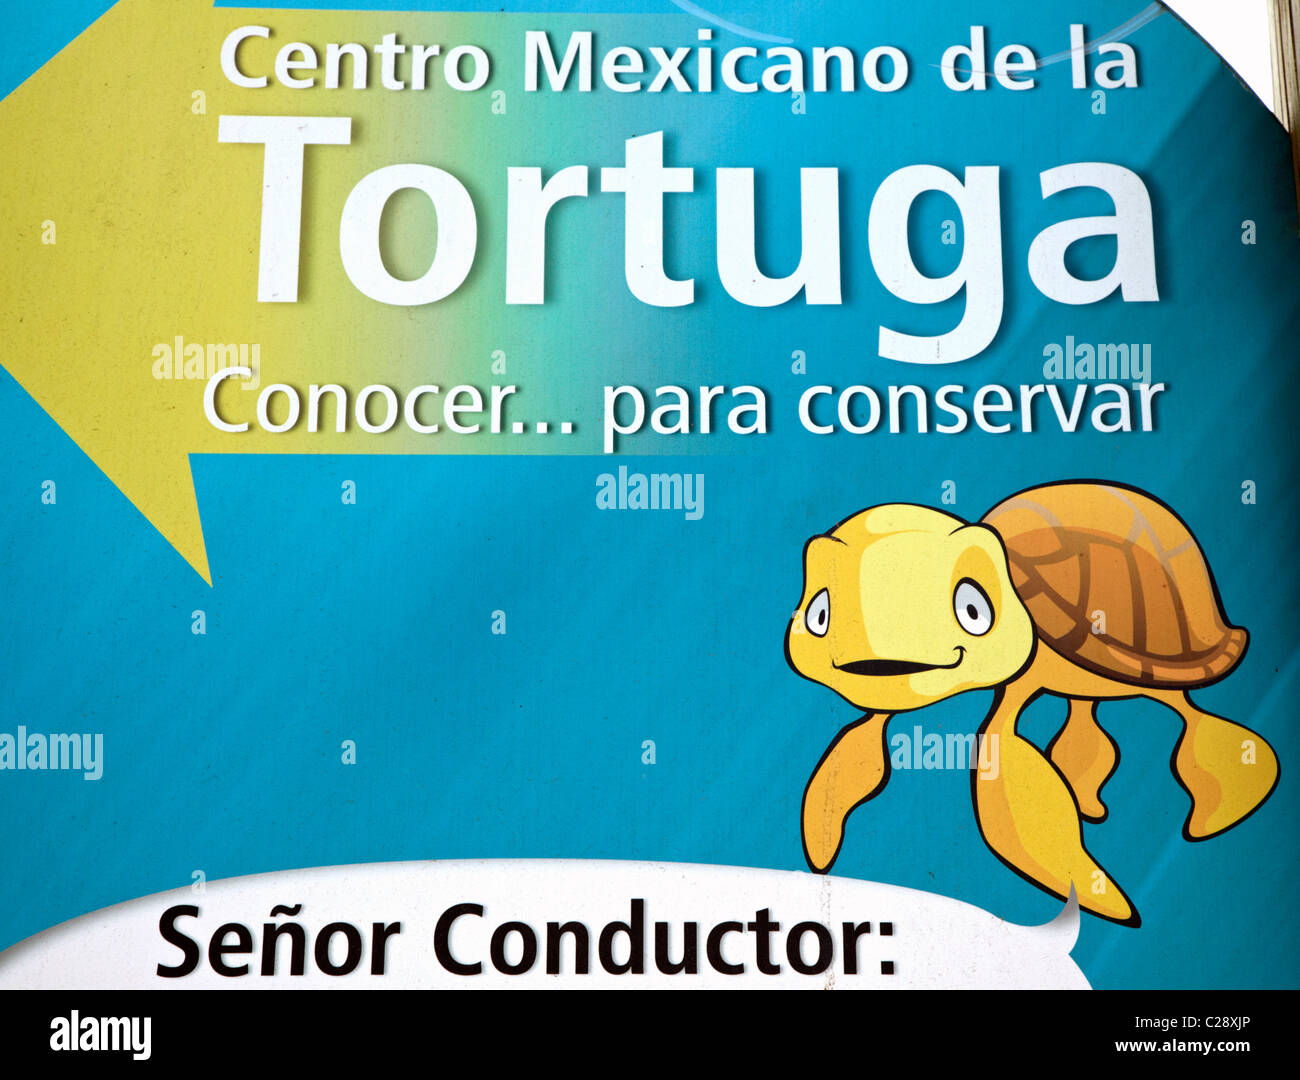 Werbung für die Turtle Conservation Center Mazunte Oaxaca Staat Mexiko Stockfoto